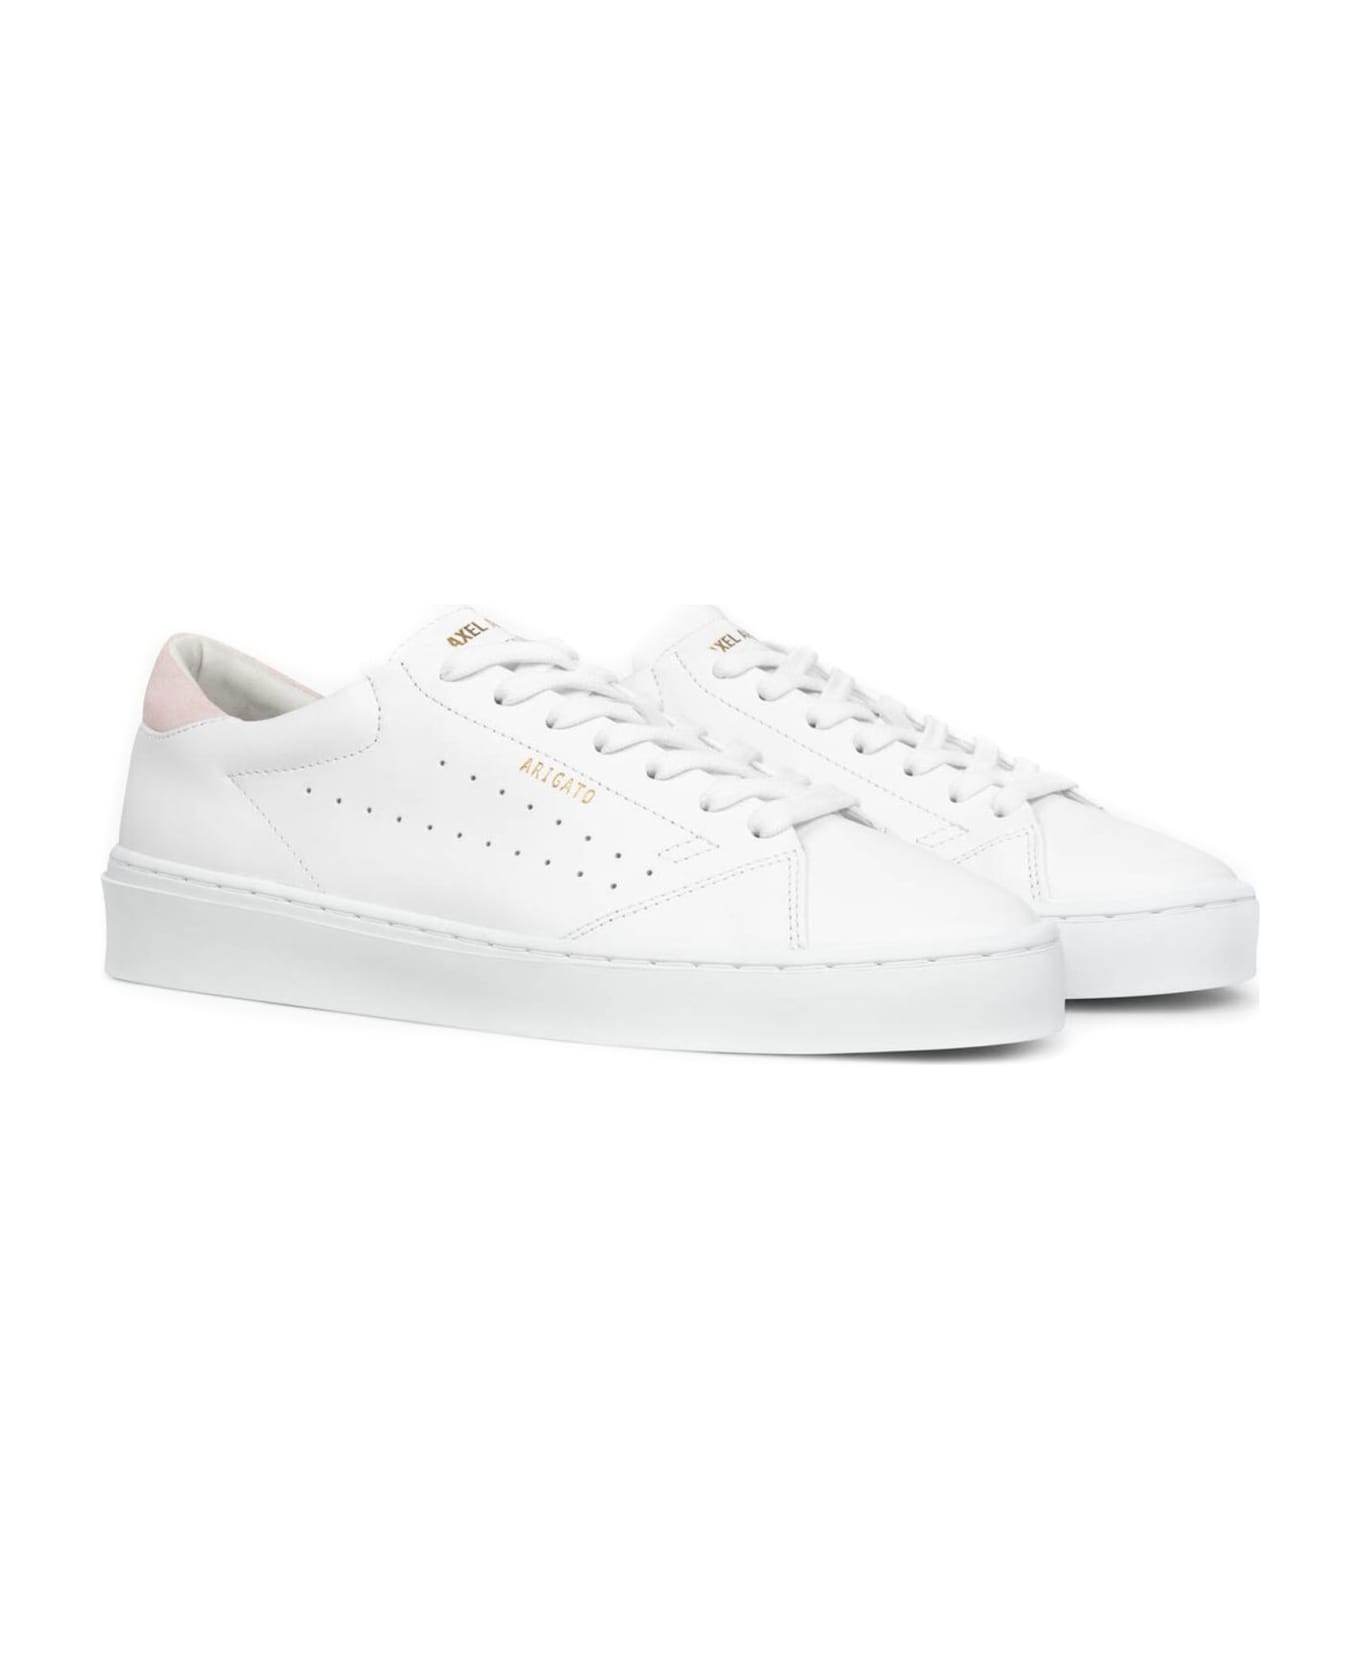 Axel Arigato White Leather Sneakers - White